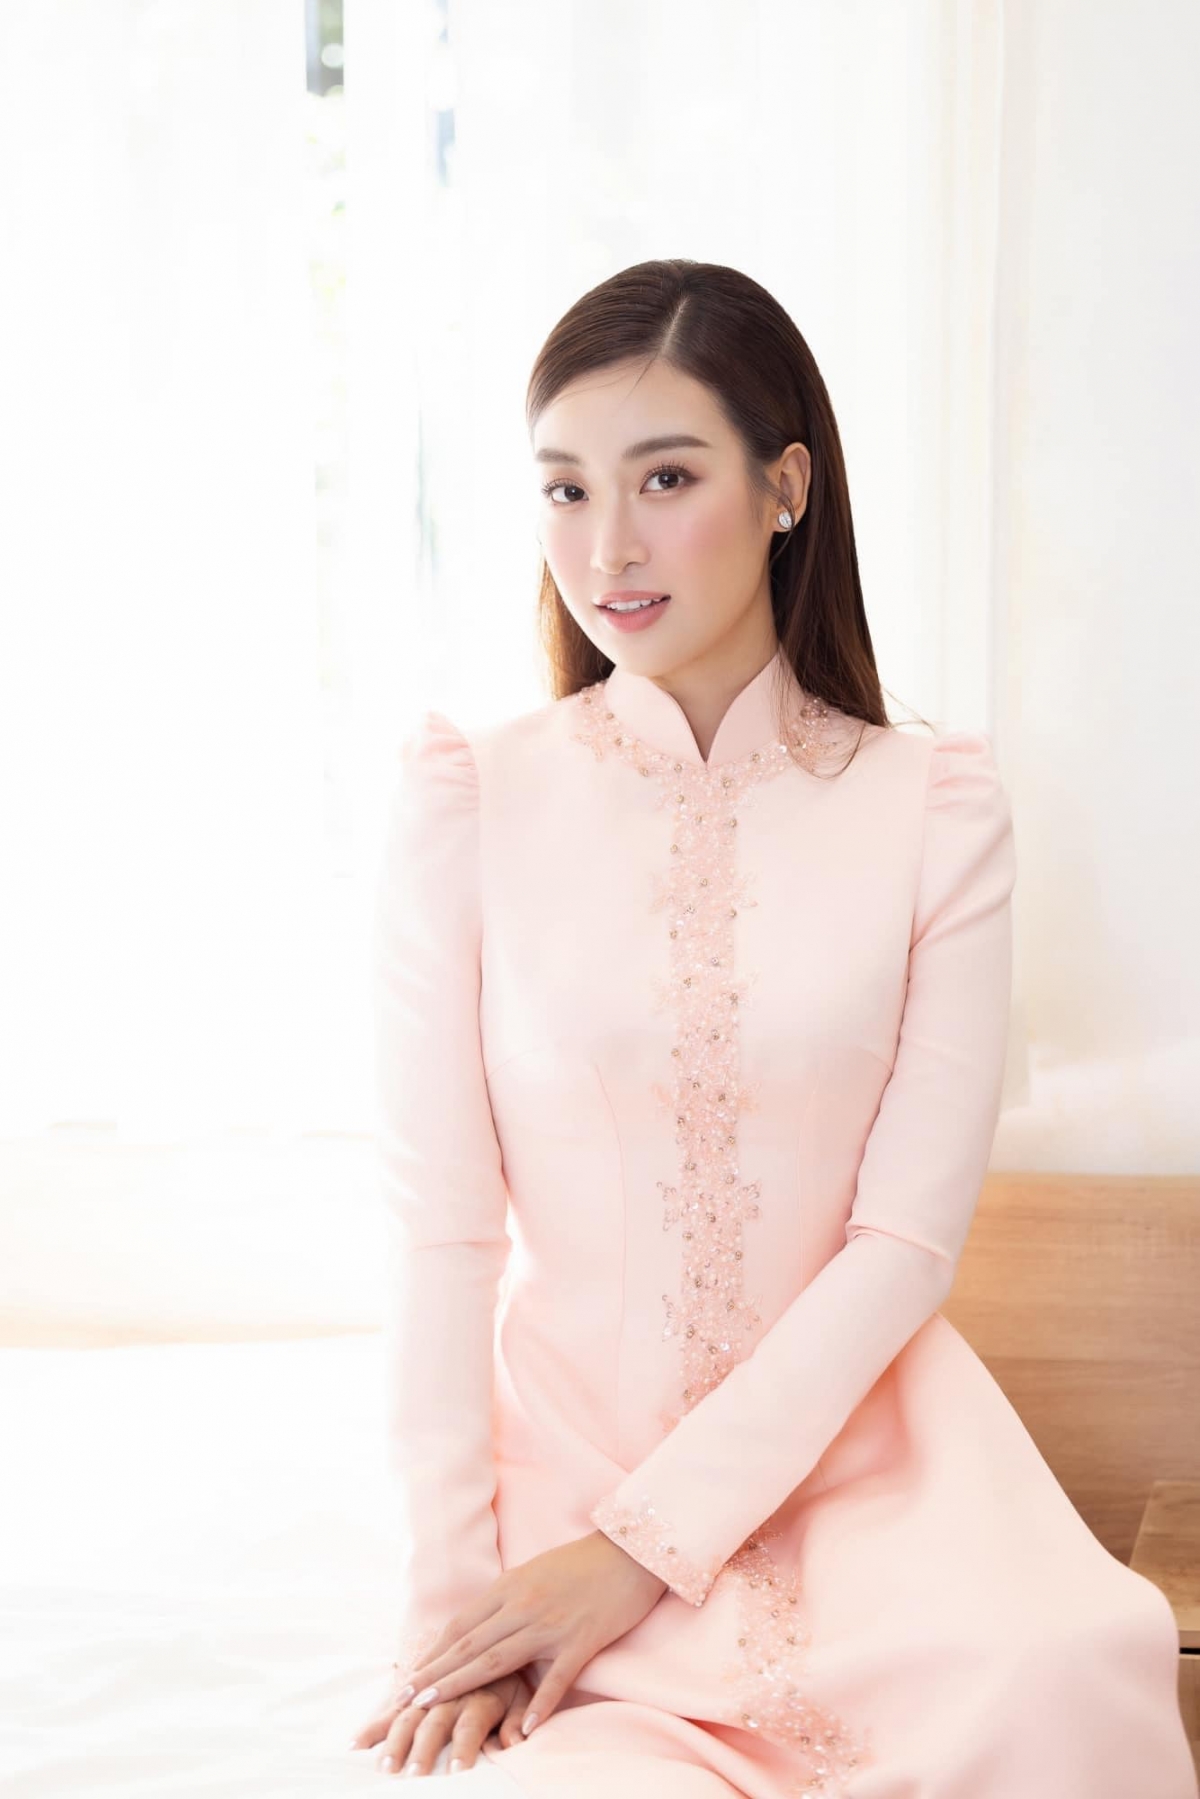 Đám cưới Hoa hậu Đỗ Mỹ Linh: Cô dâu diện áo dài hồng dịu dàng, nhã nhặn